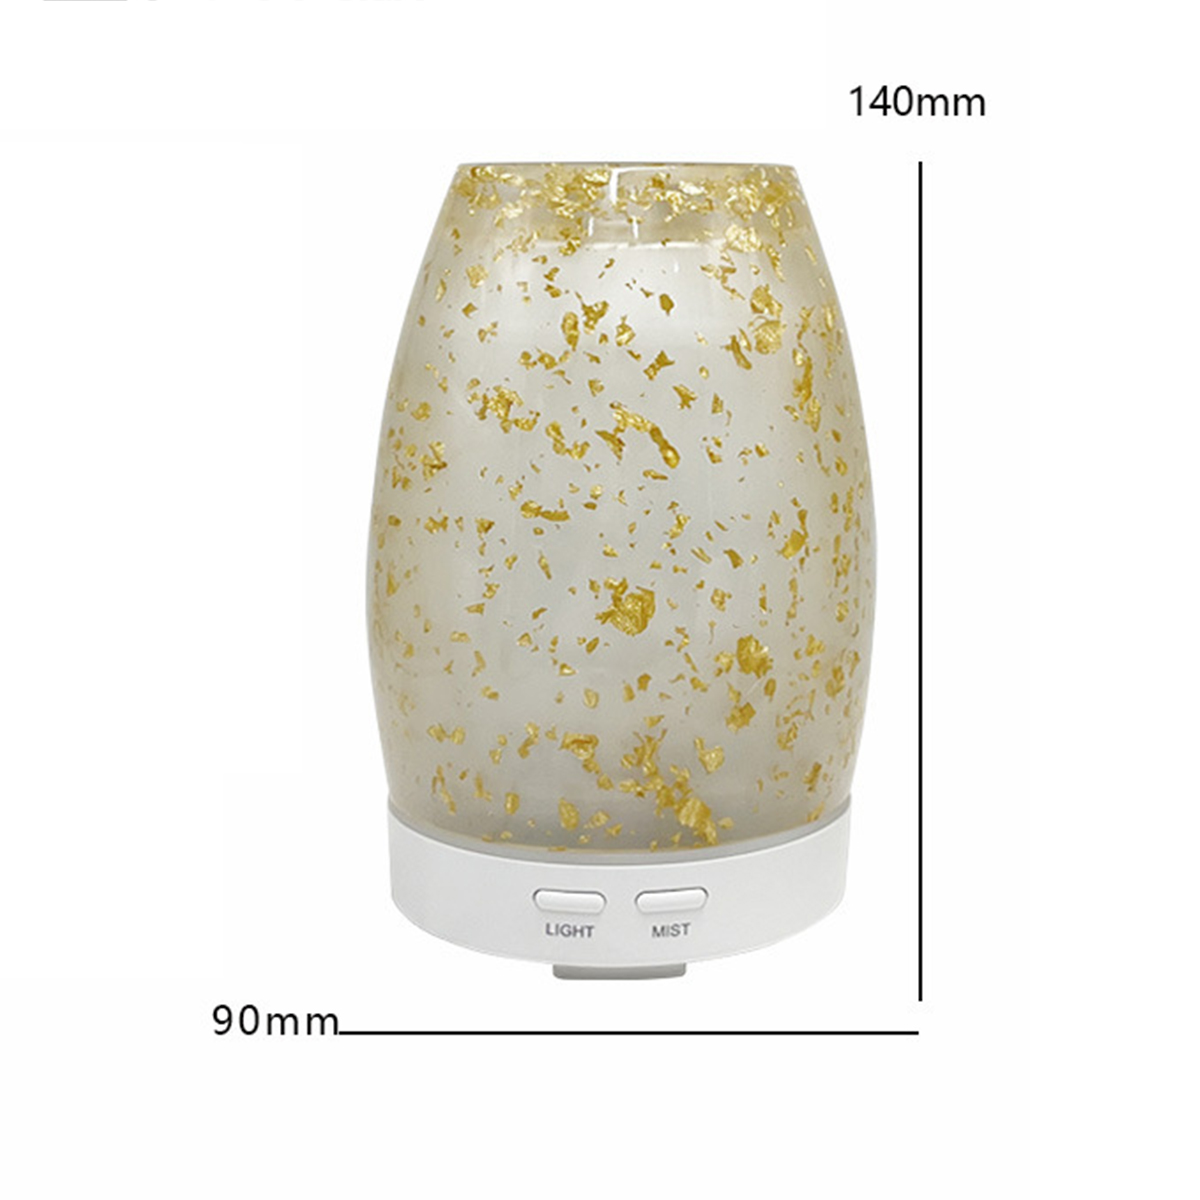 SHAOKE Mini Ultraschall Luftbefeuchter 300ml Abschaltung m²) Weiß - Luftbefeuchter Aromatherapie ,Gold Automatische 10 - (Raumgröße